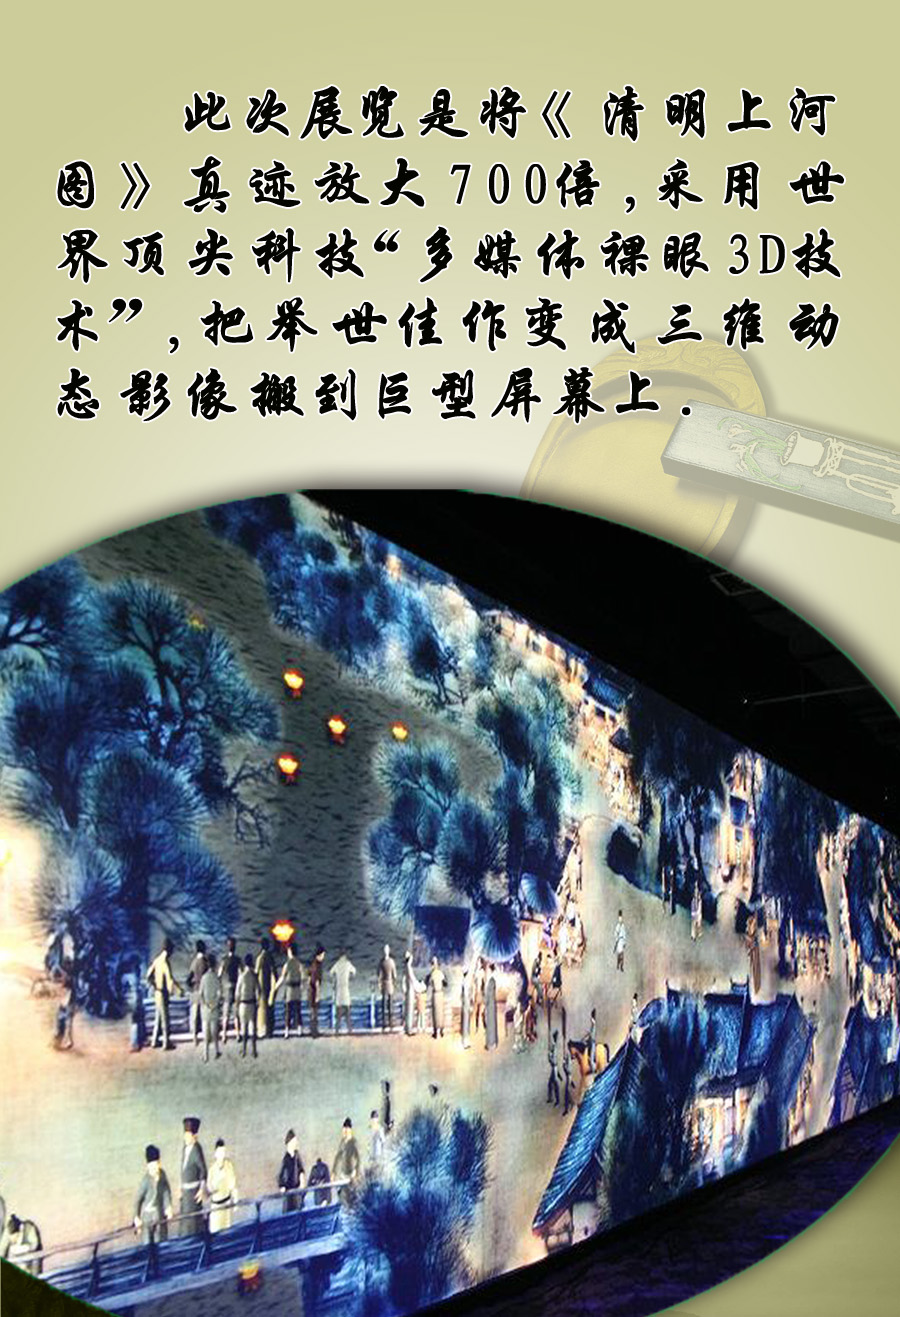 世博会3D巨幅《清明上河图》首现济南(图4)